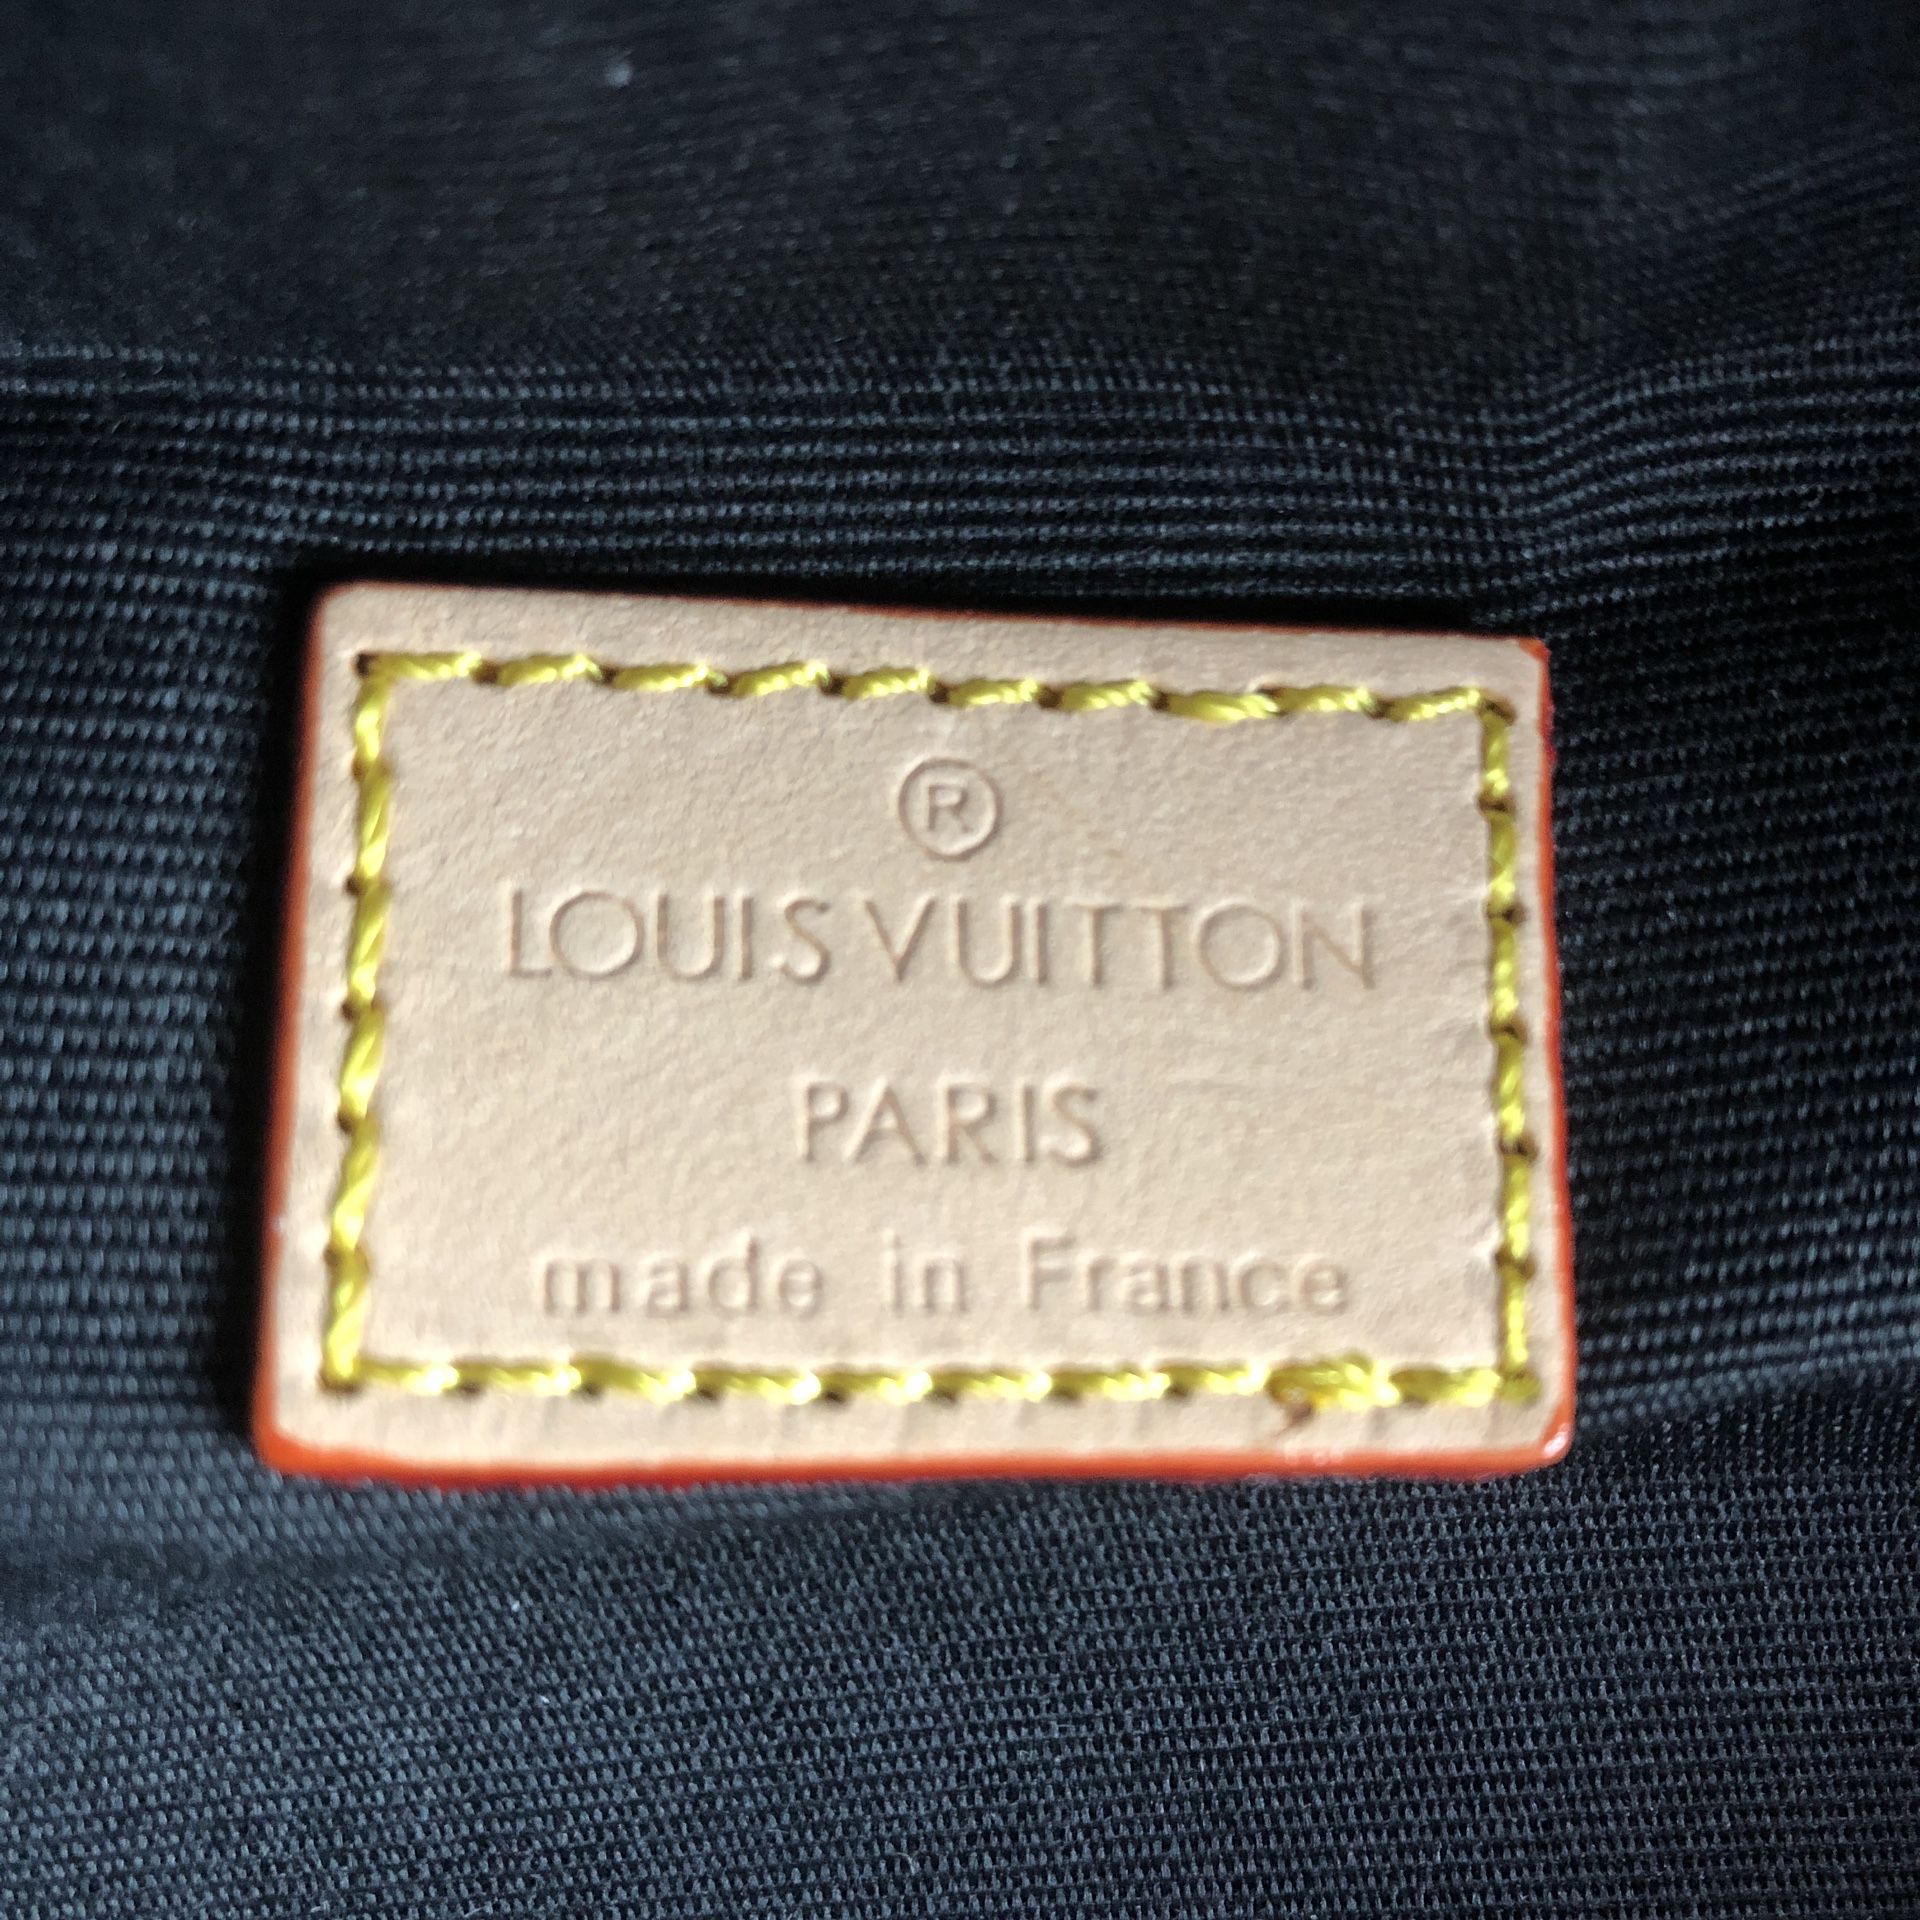 Louis Vuitton 2006 Pre-owned Damier Ebène Belt Bag - Brown